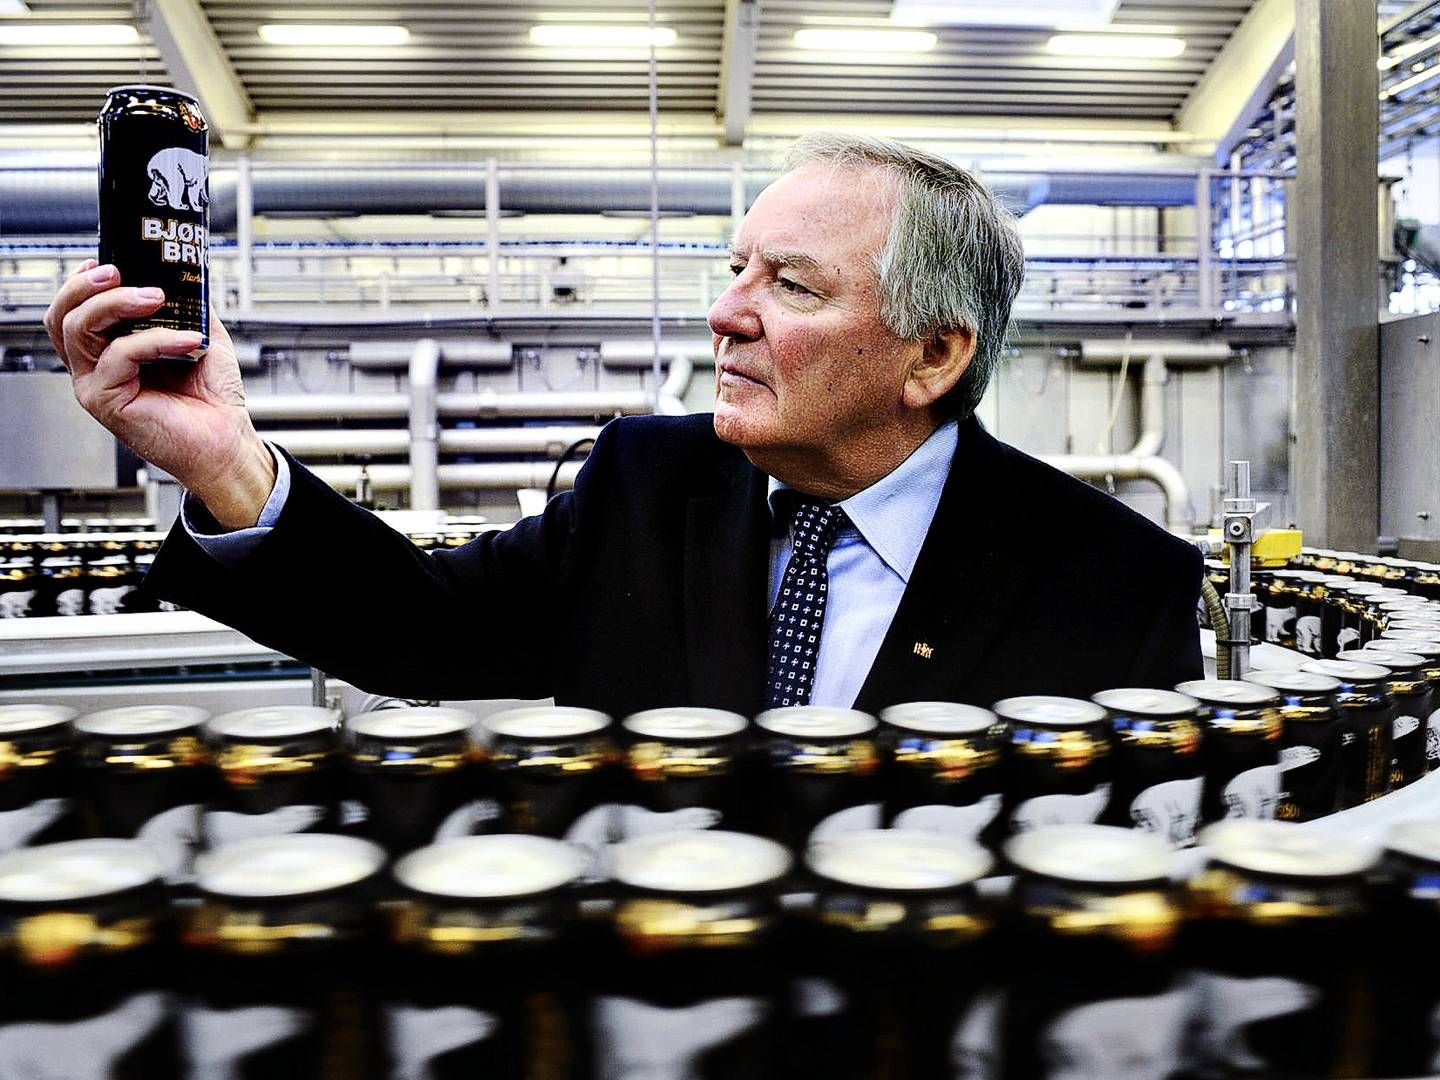 Bernd Griese har været direktør i bryggeriet Harbie fra 1981-1986, hvor han så blev udnævnt til administrerende direktør, som han fortsatte i helt frem til 2019. Nu træder han ud af selskabets bestyrelse. | Foto: Mik Eskestad